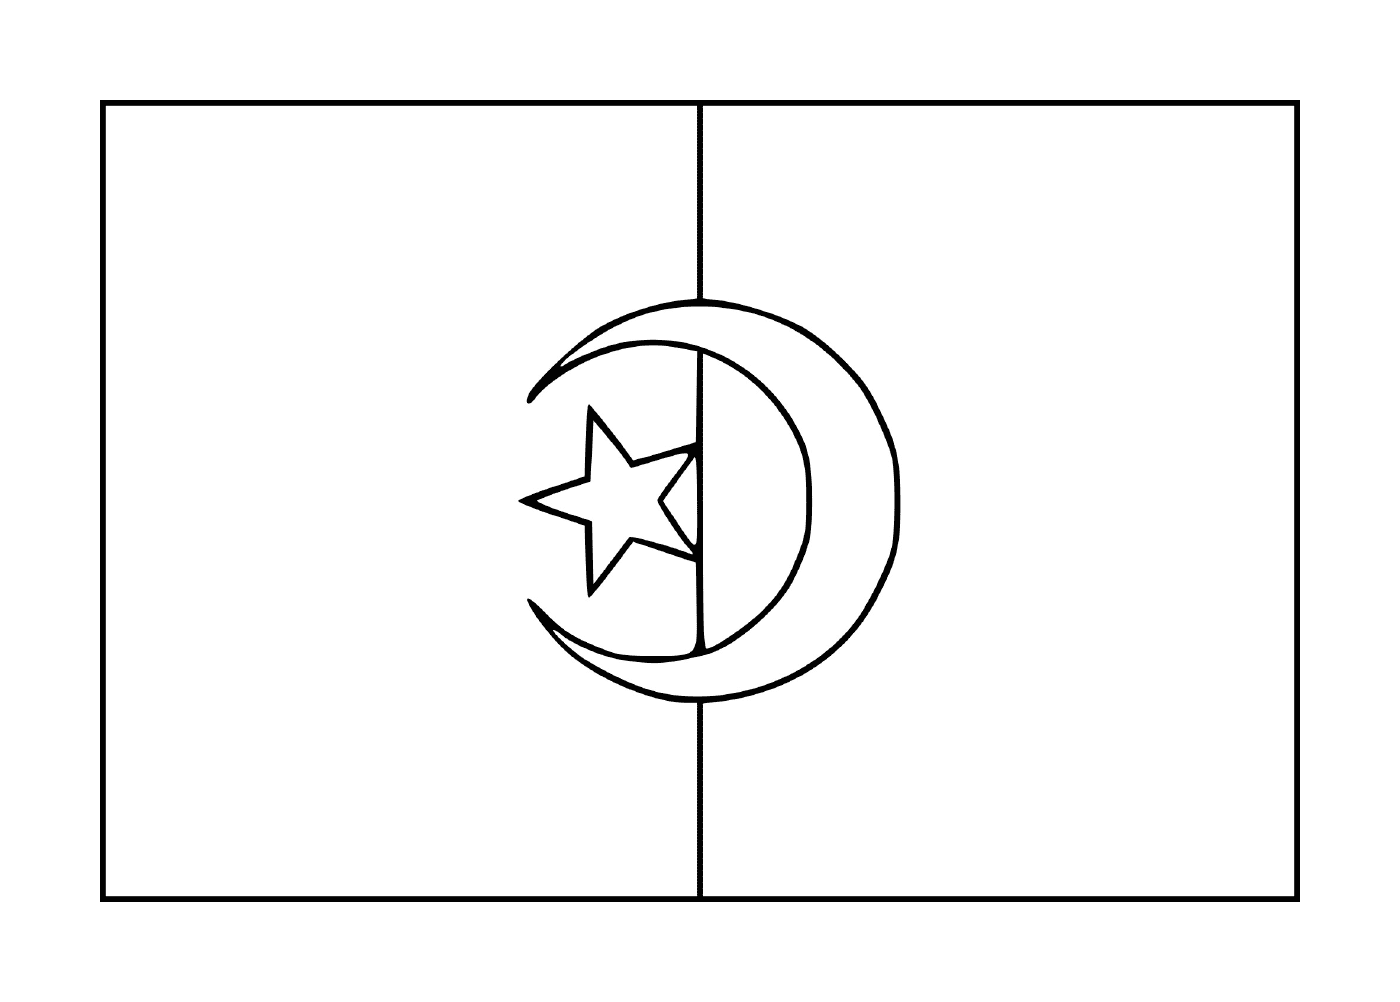  阿尔及利亚国旗 